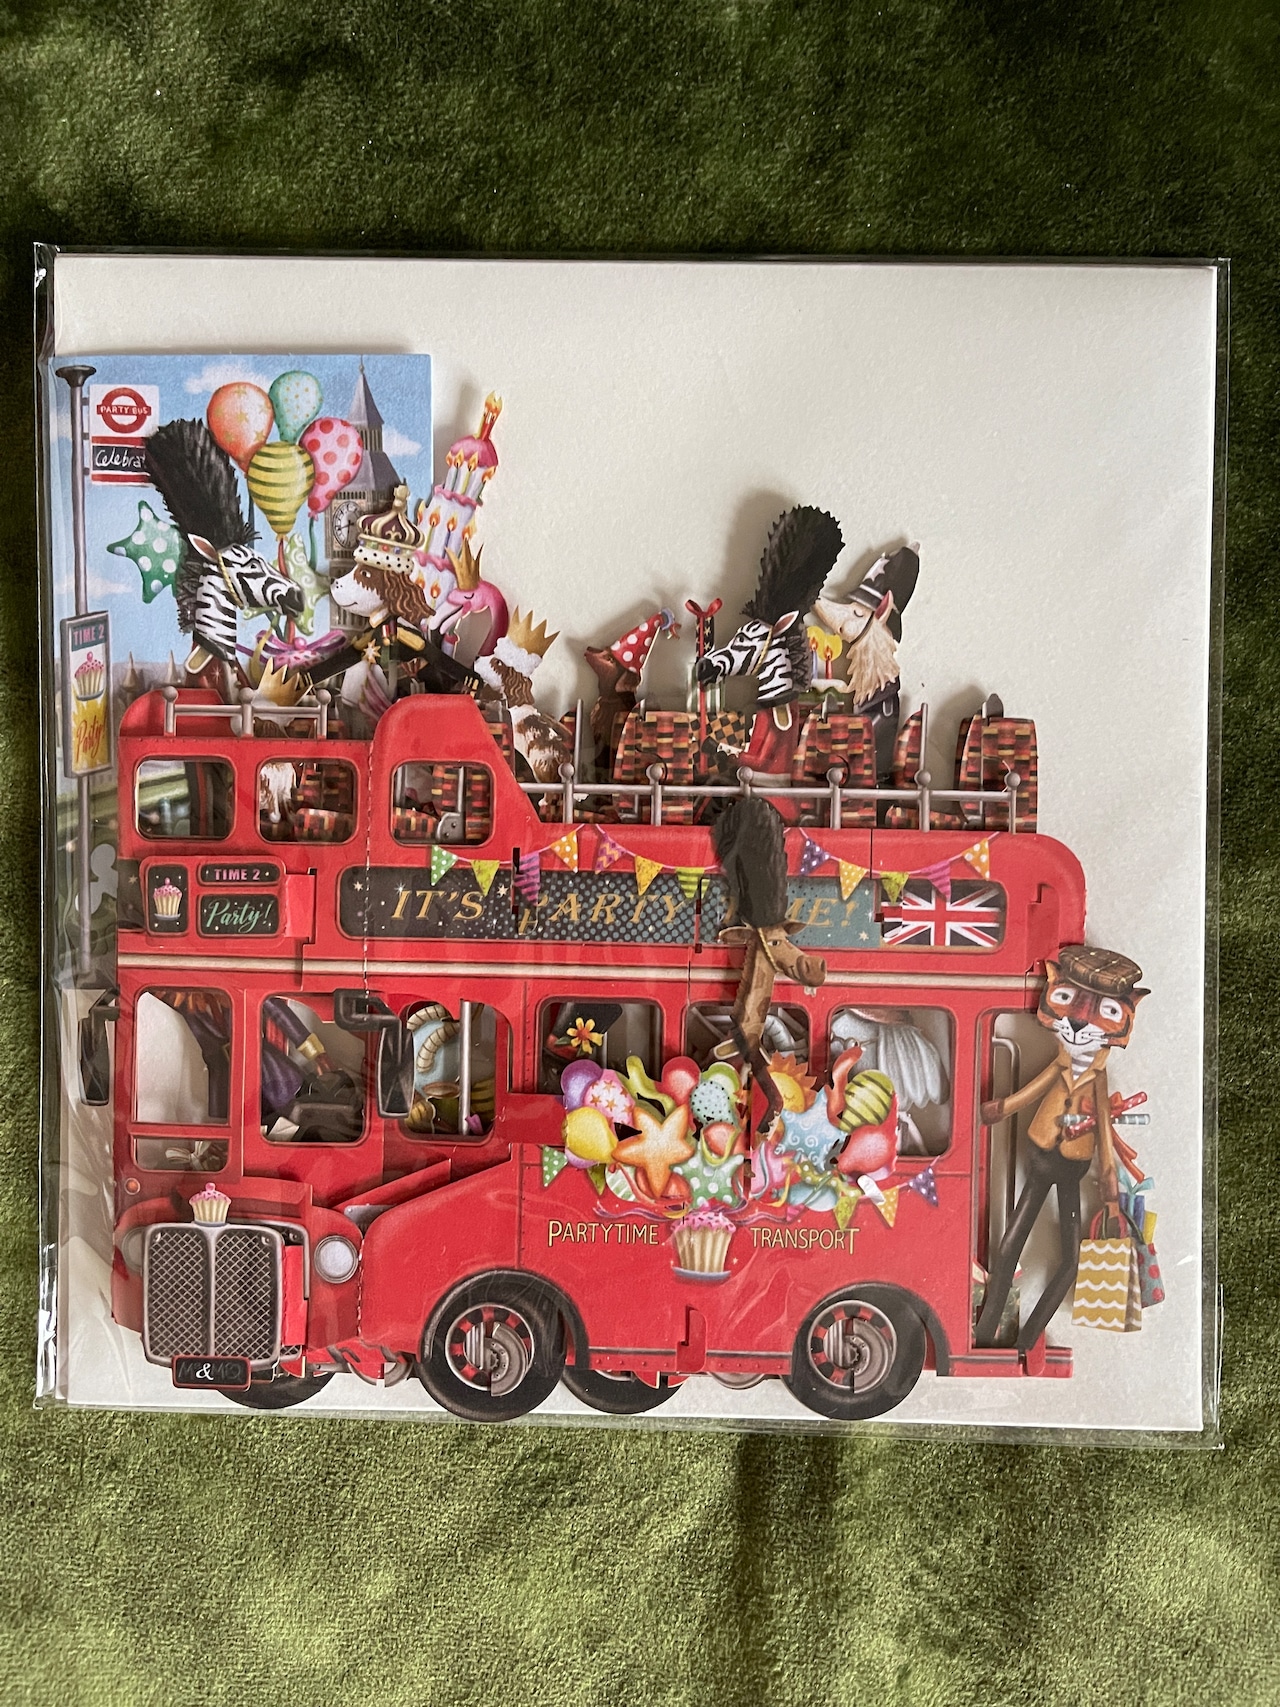 再入荷！『Me & McQ』「パーティーバス」3Dカード "The Party Bus"  3D Card イギリスよりの画像03